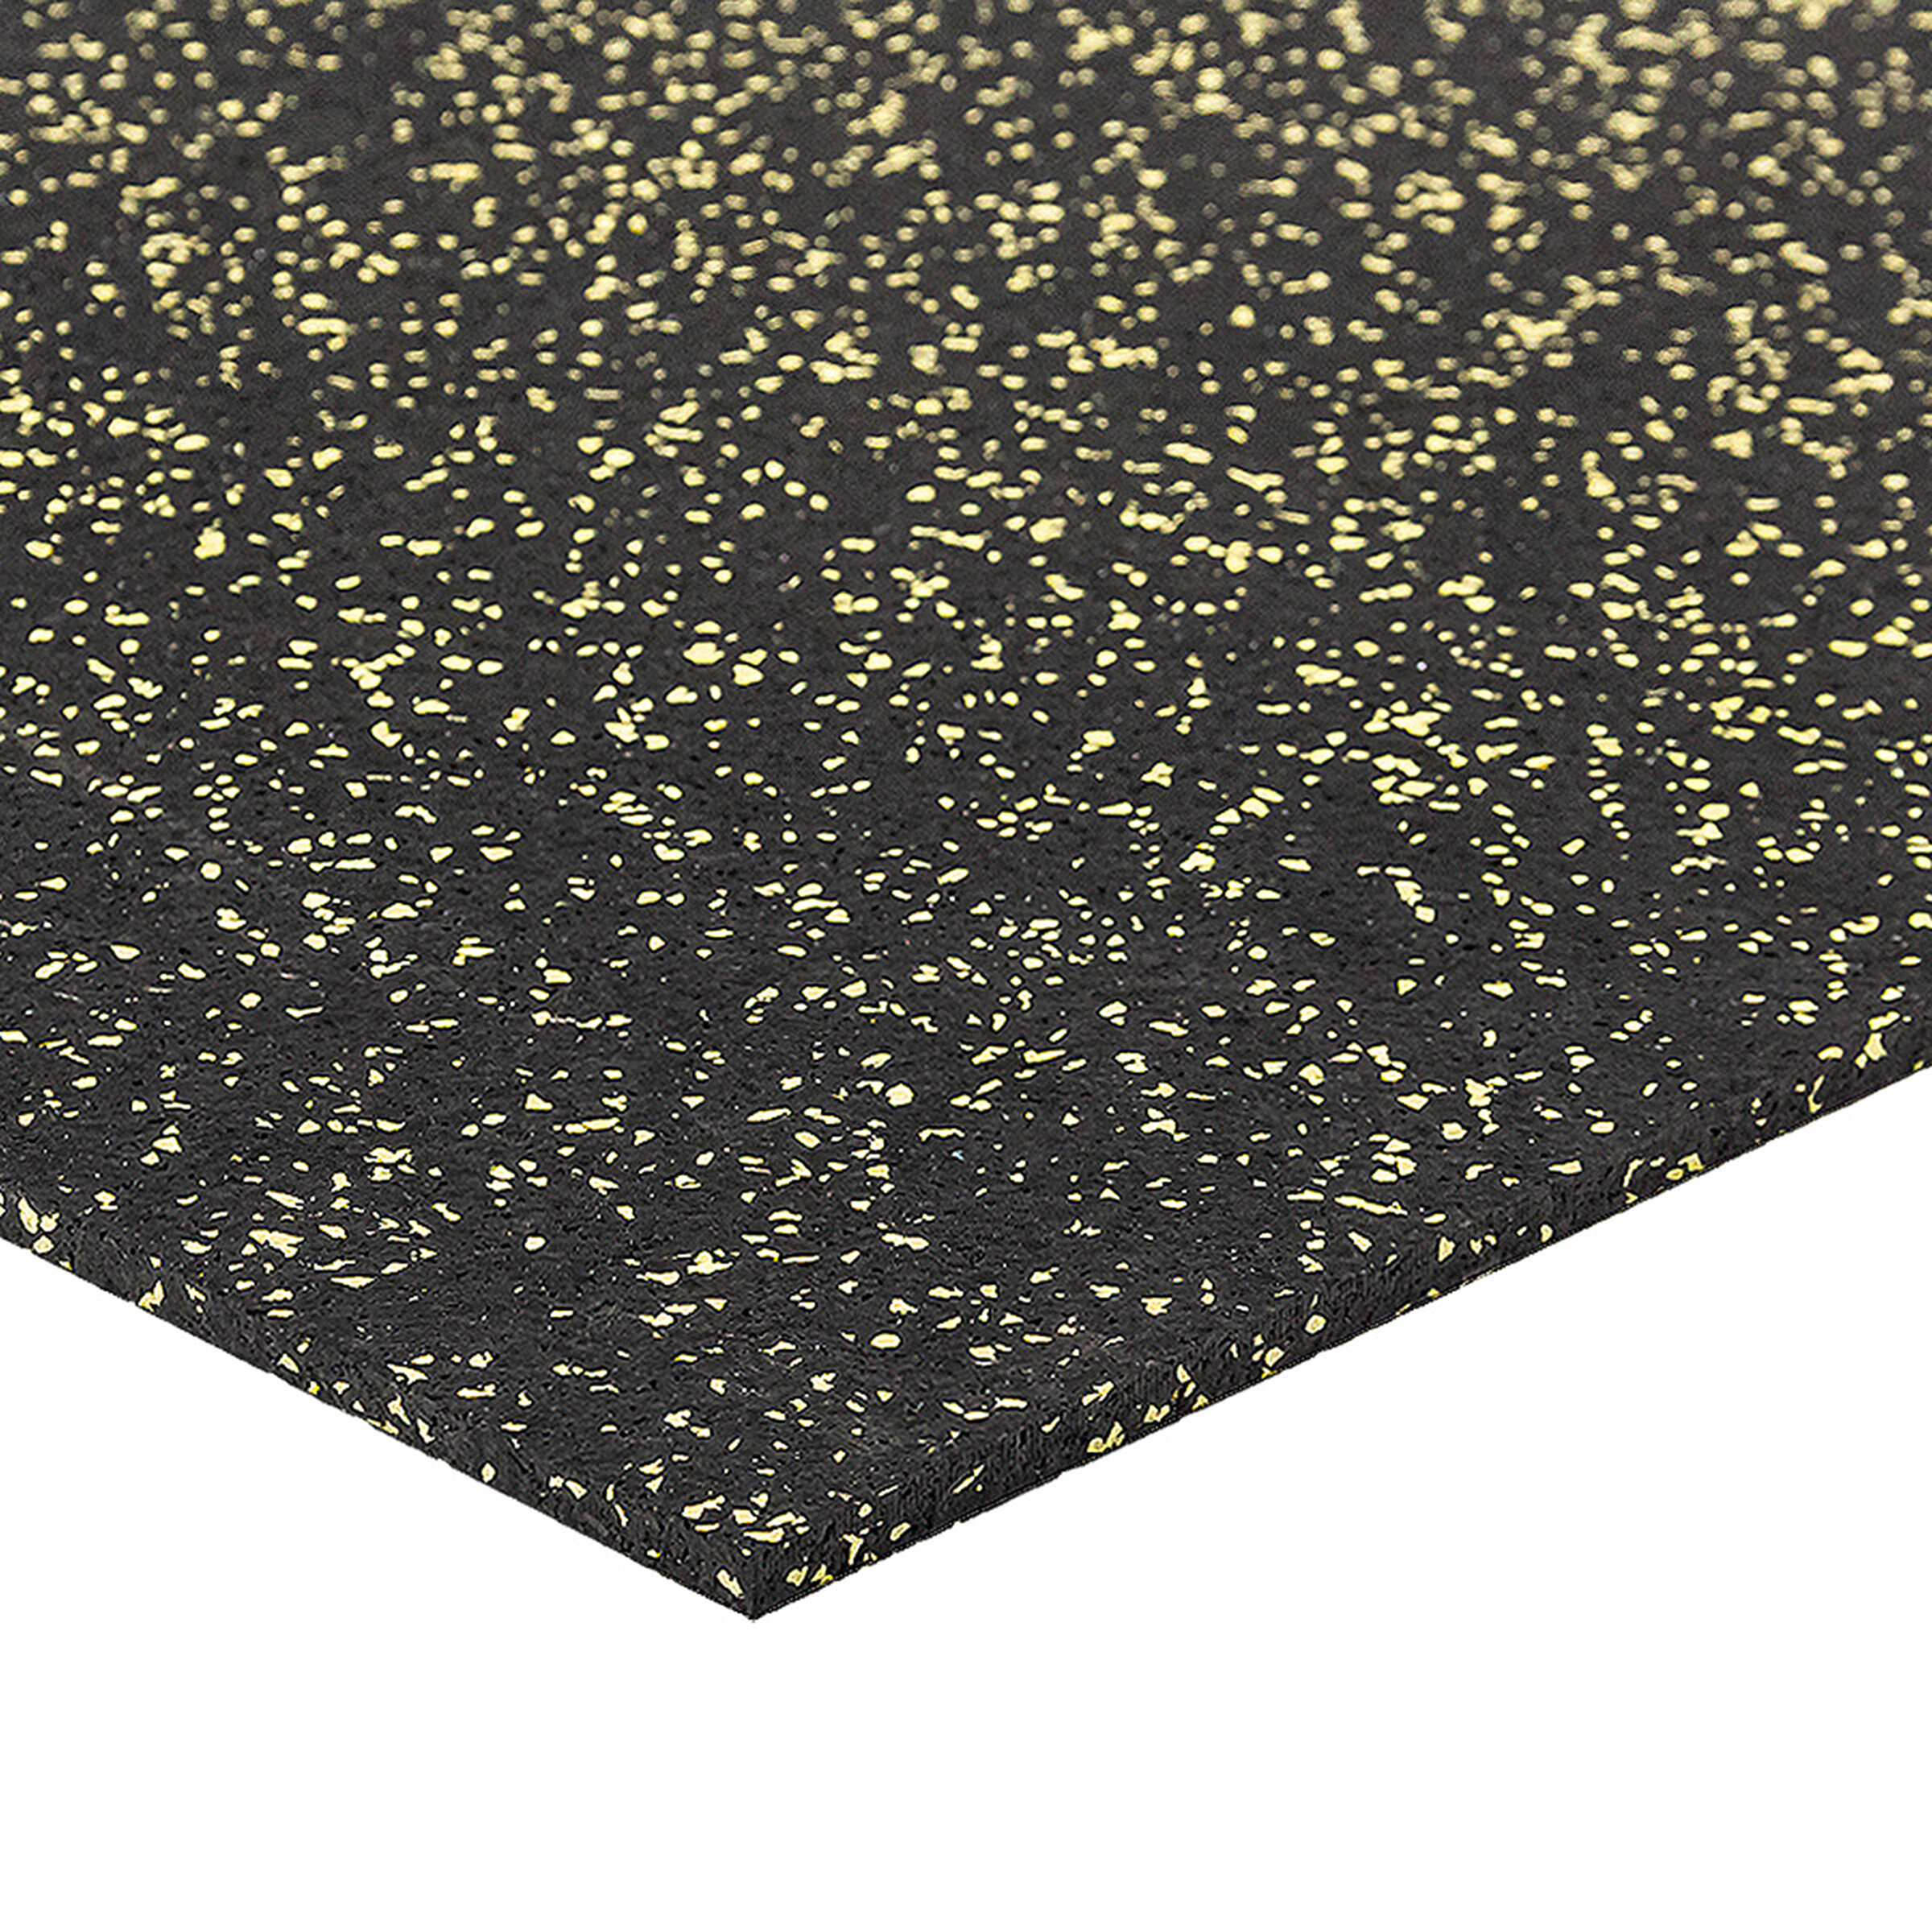 Černo-žlutá gumová modulová puzzle dlažba (roh) FLOMA FitFlo SF1050 - délka 50 cm, šířka 50 cm, výška 0,8 cm